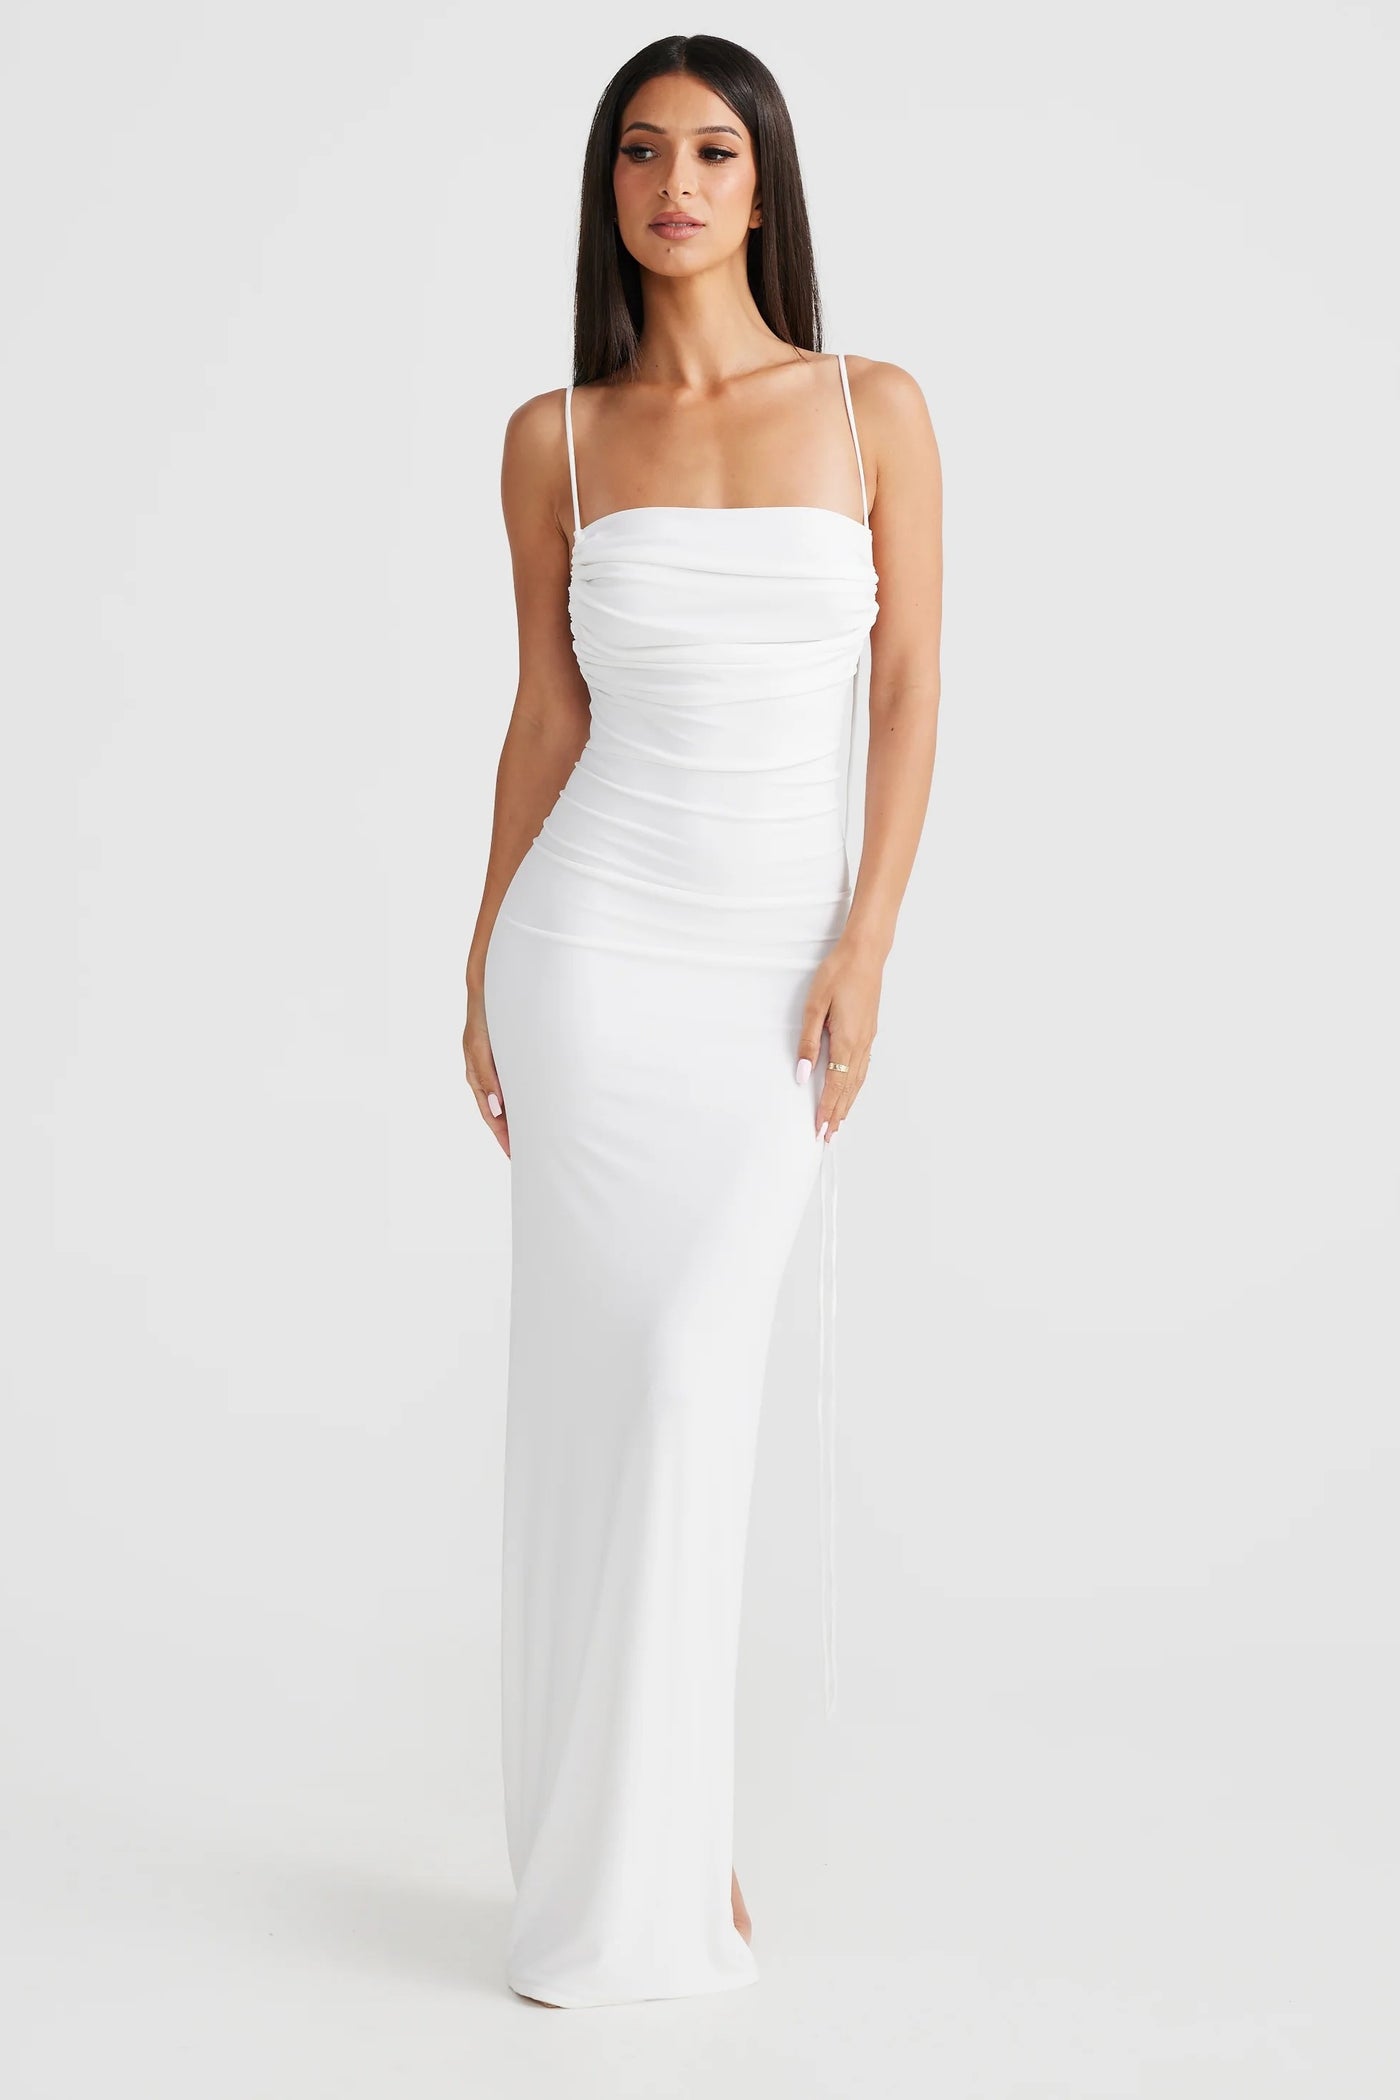 Natali Multi-Way Dress - White - SHOPJAUS - JAUS